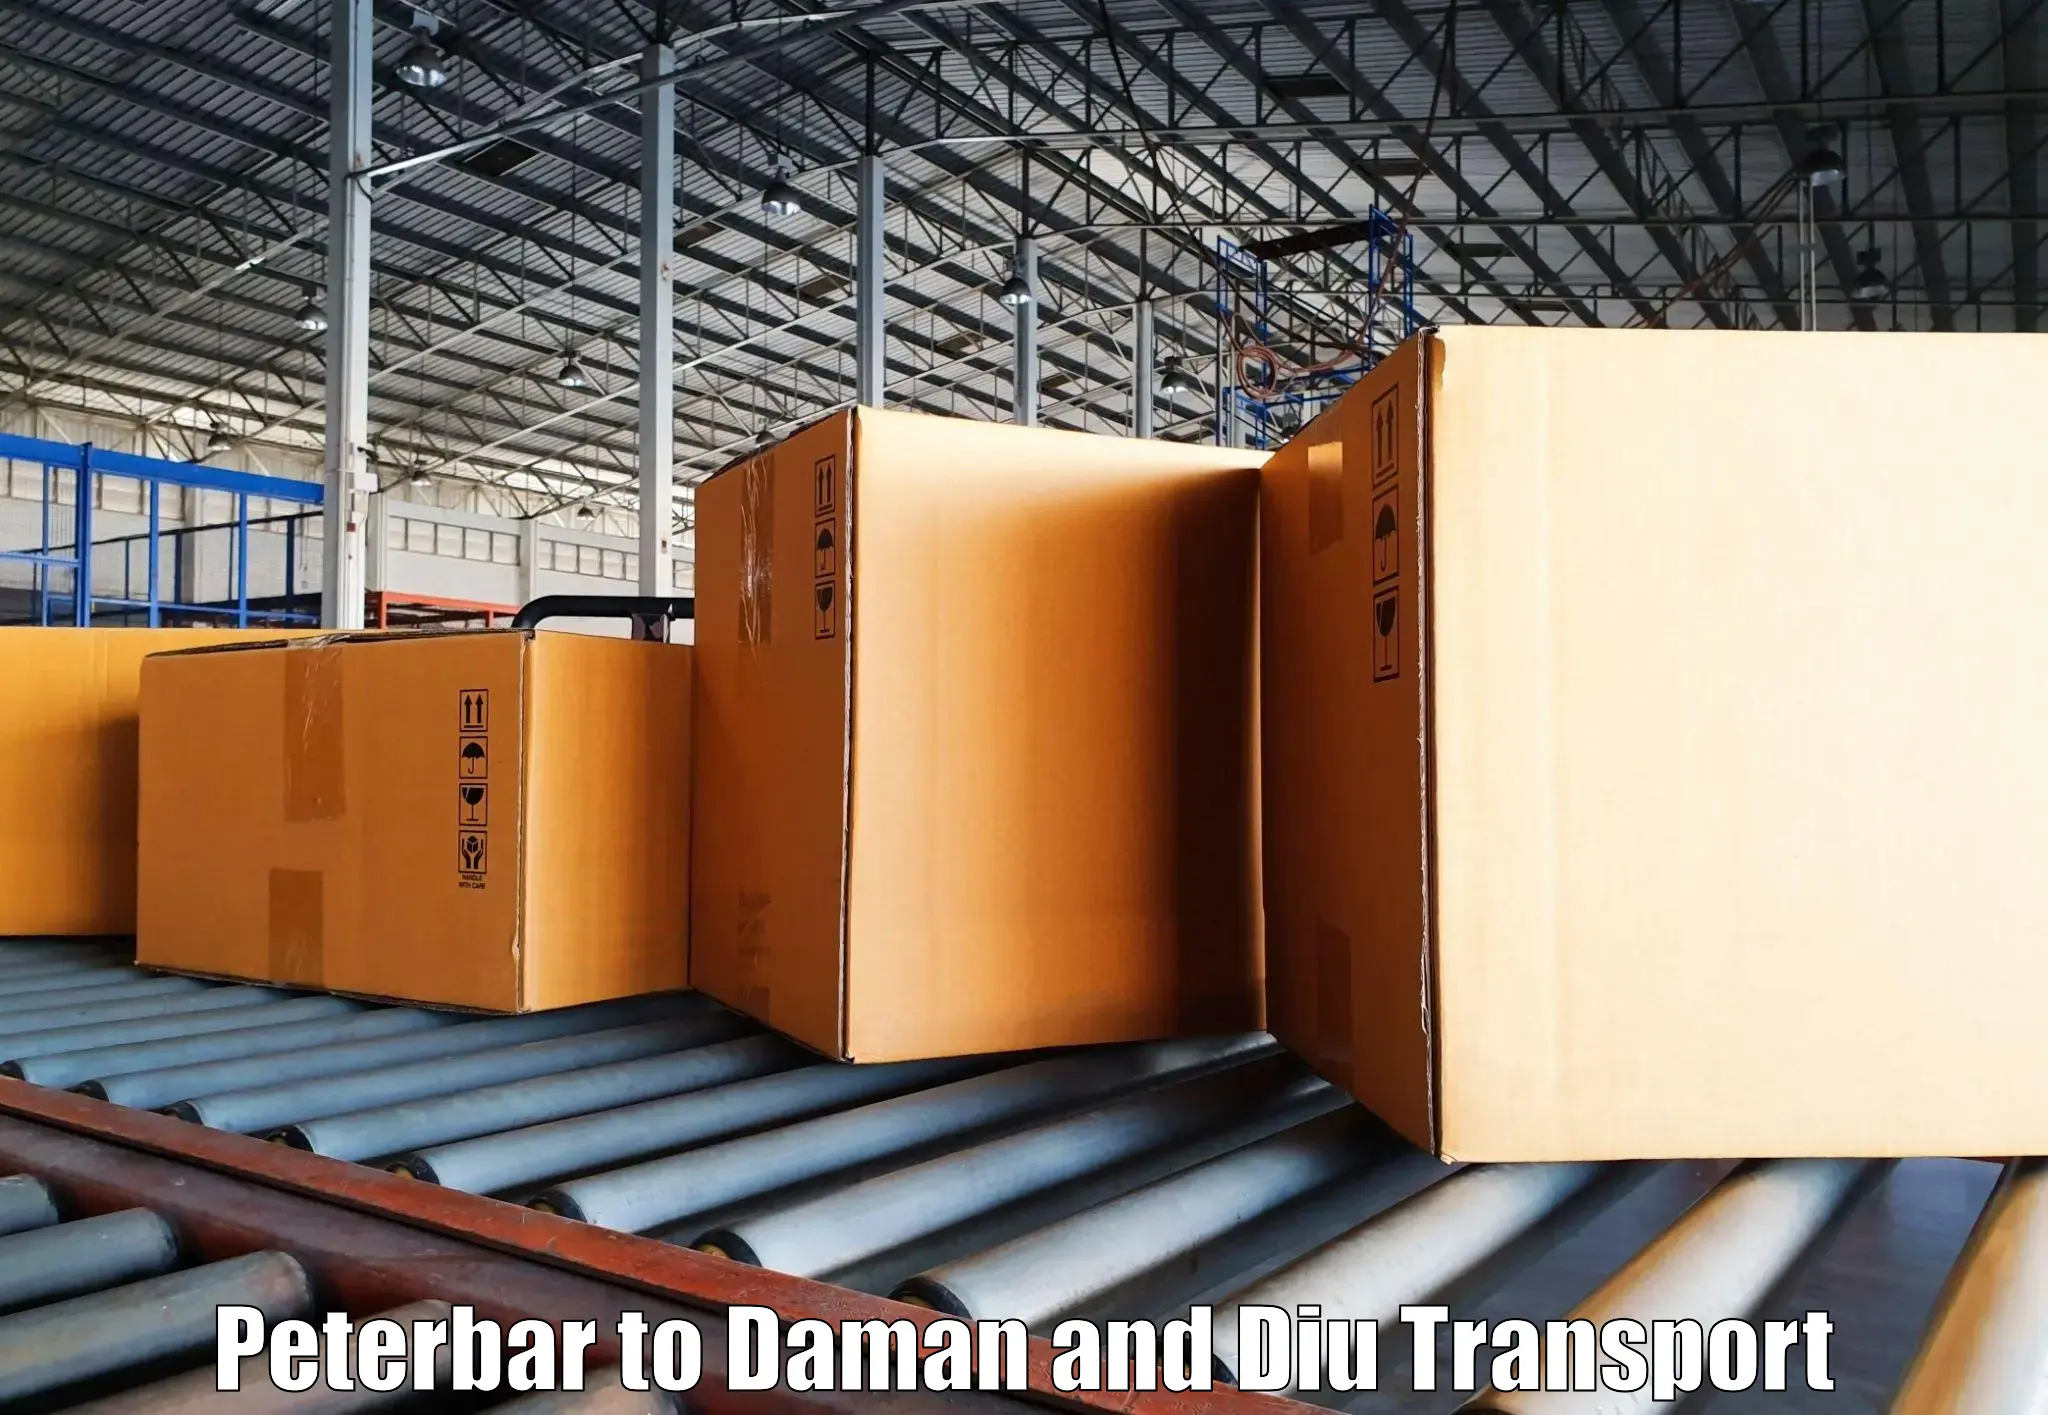 Lorry transport service Peterbar to Daman and Diu